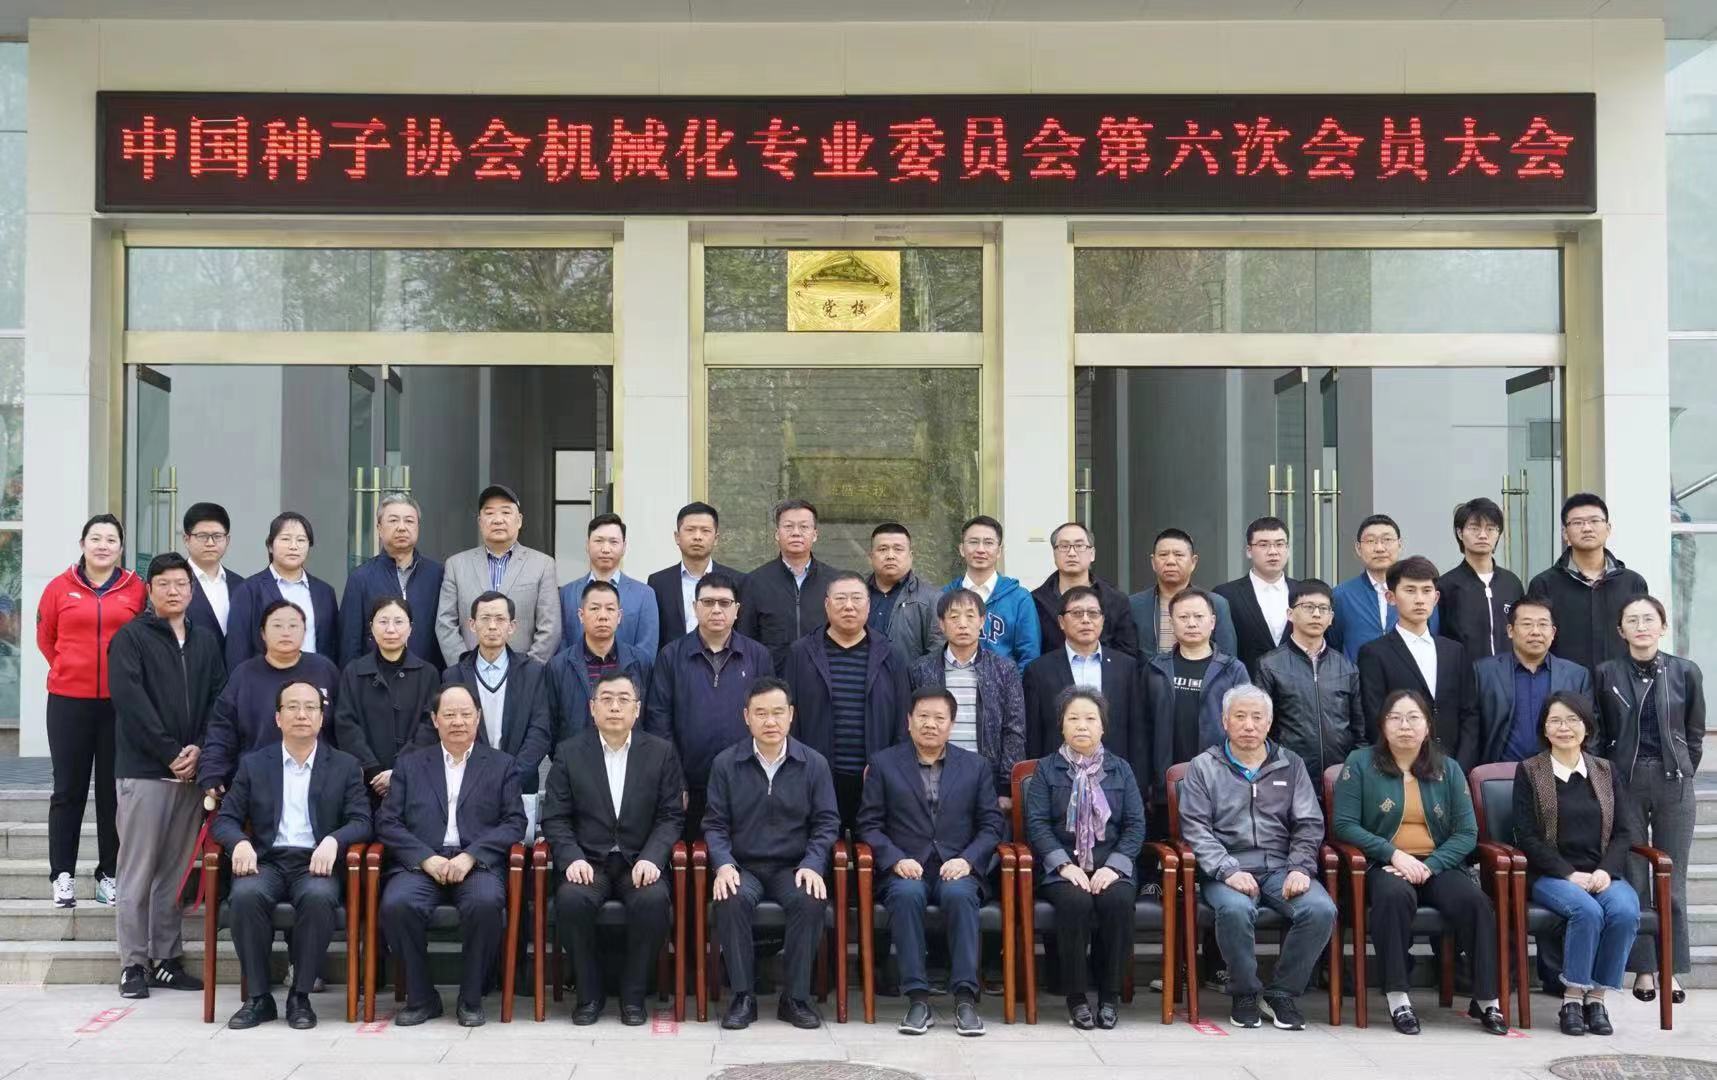 祝贺中国种子协会机械化专业委员会第六次会员大会圆满落幕